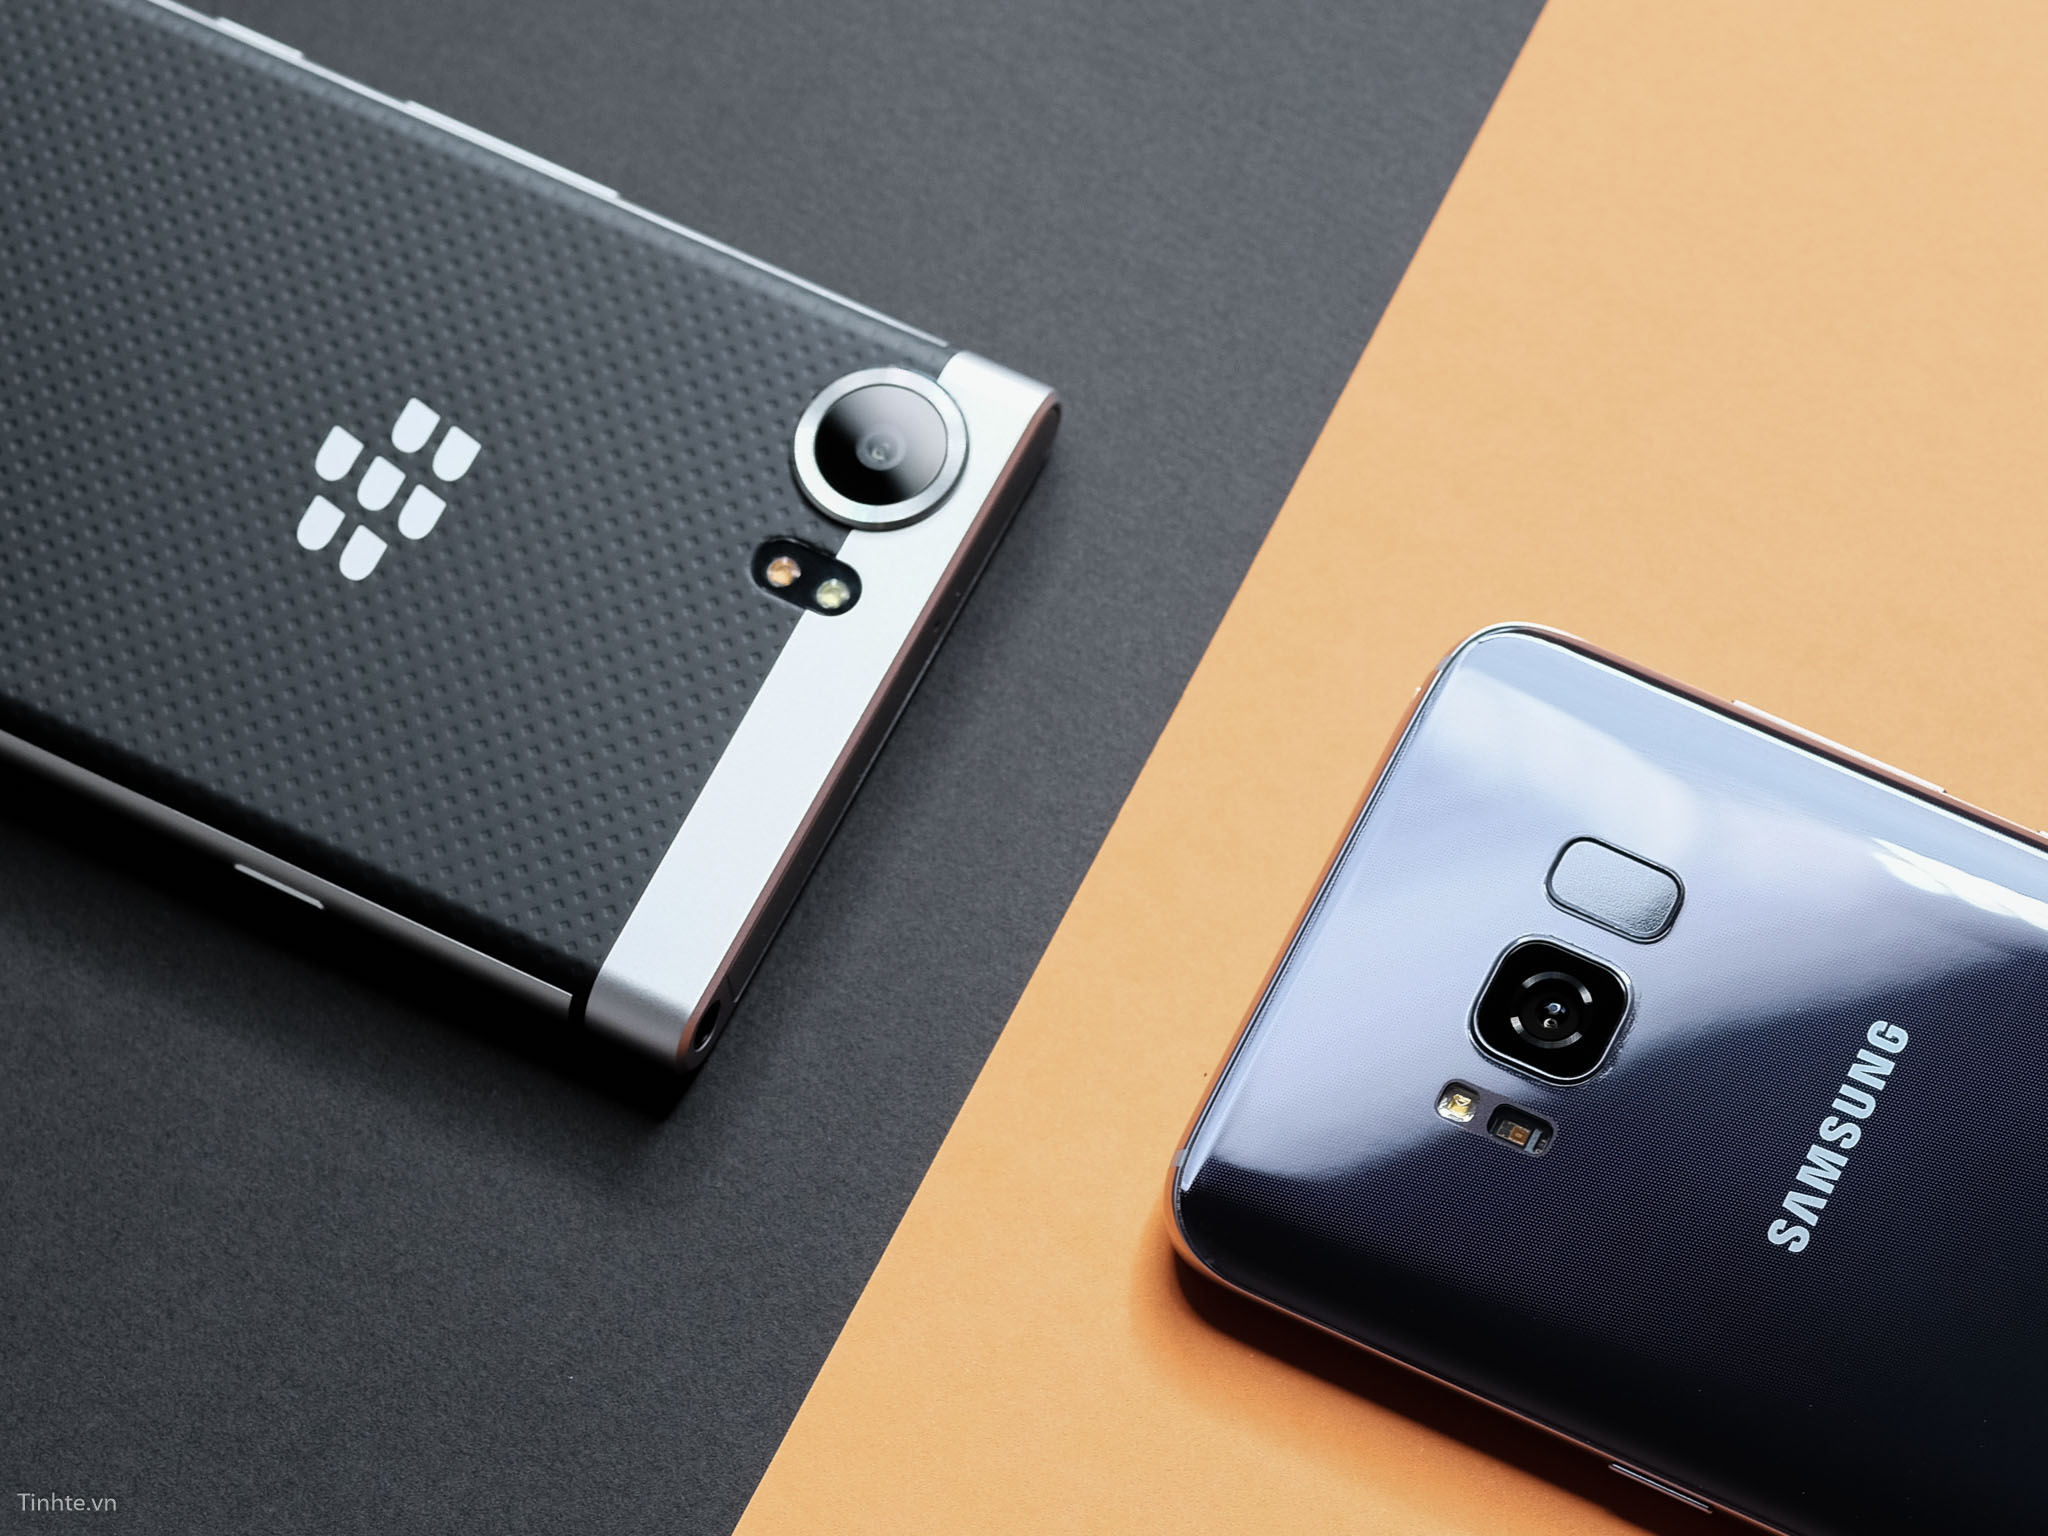 [Bộ ảnh] Galaxy S8 và Blackberry KeyOne chụp bởi Fujifilm GFX 180 triệu